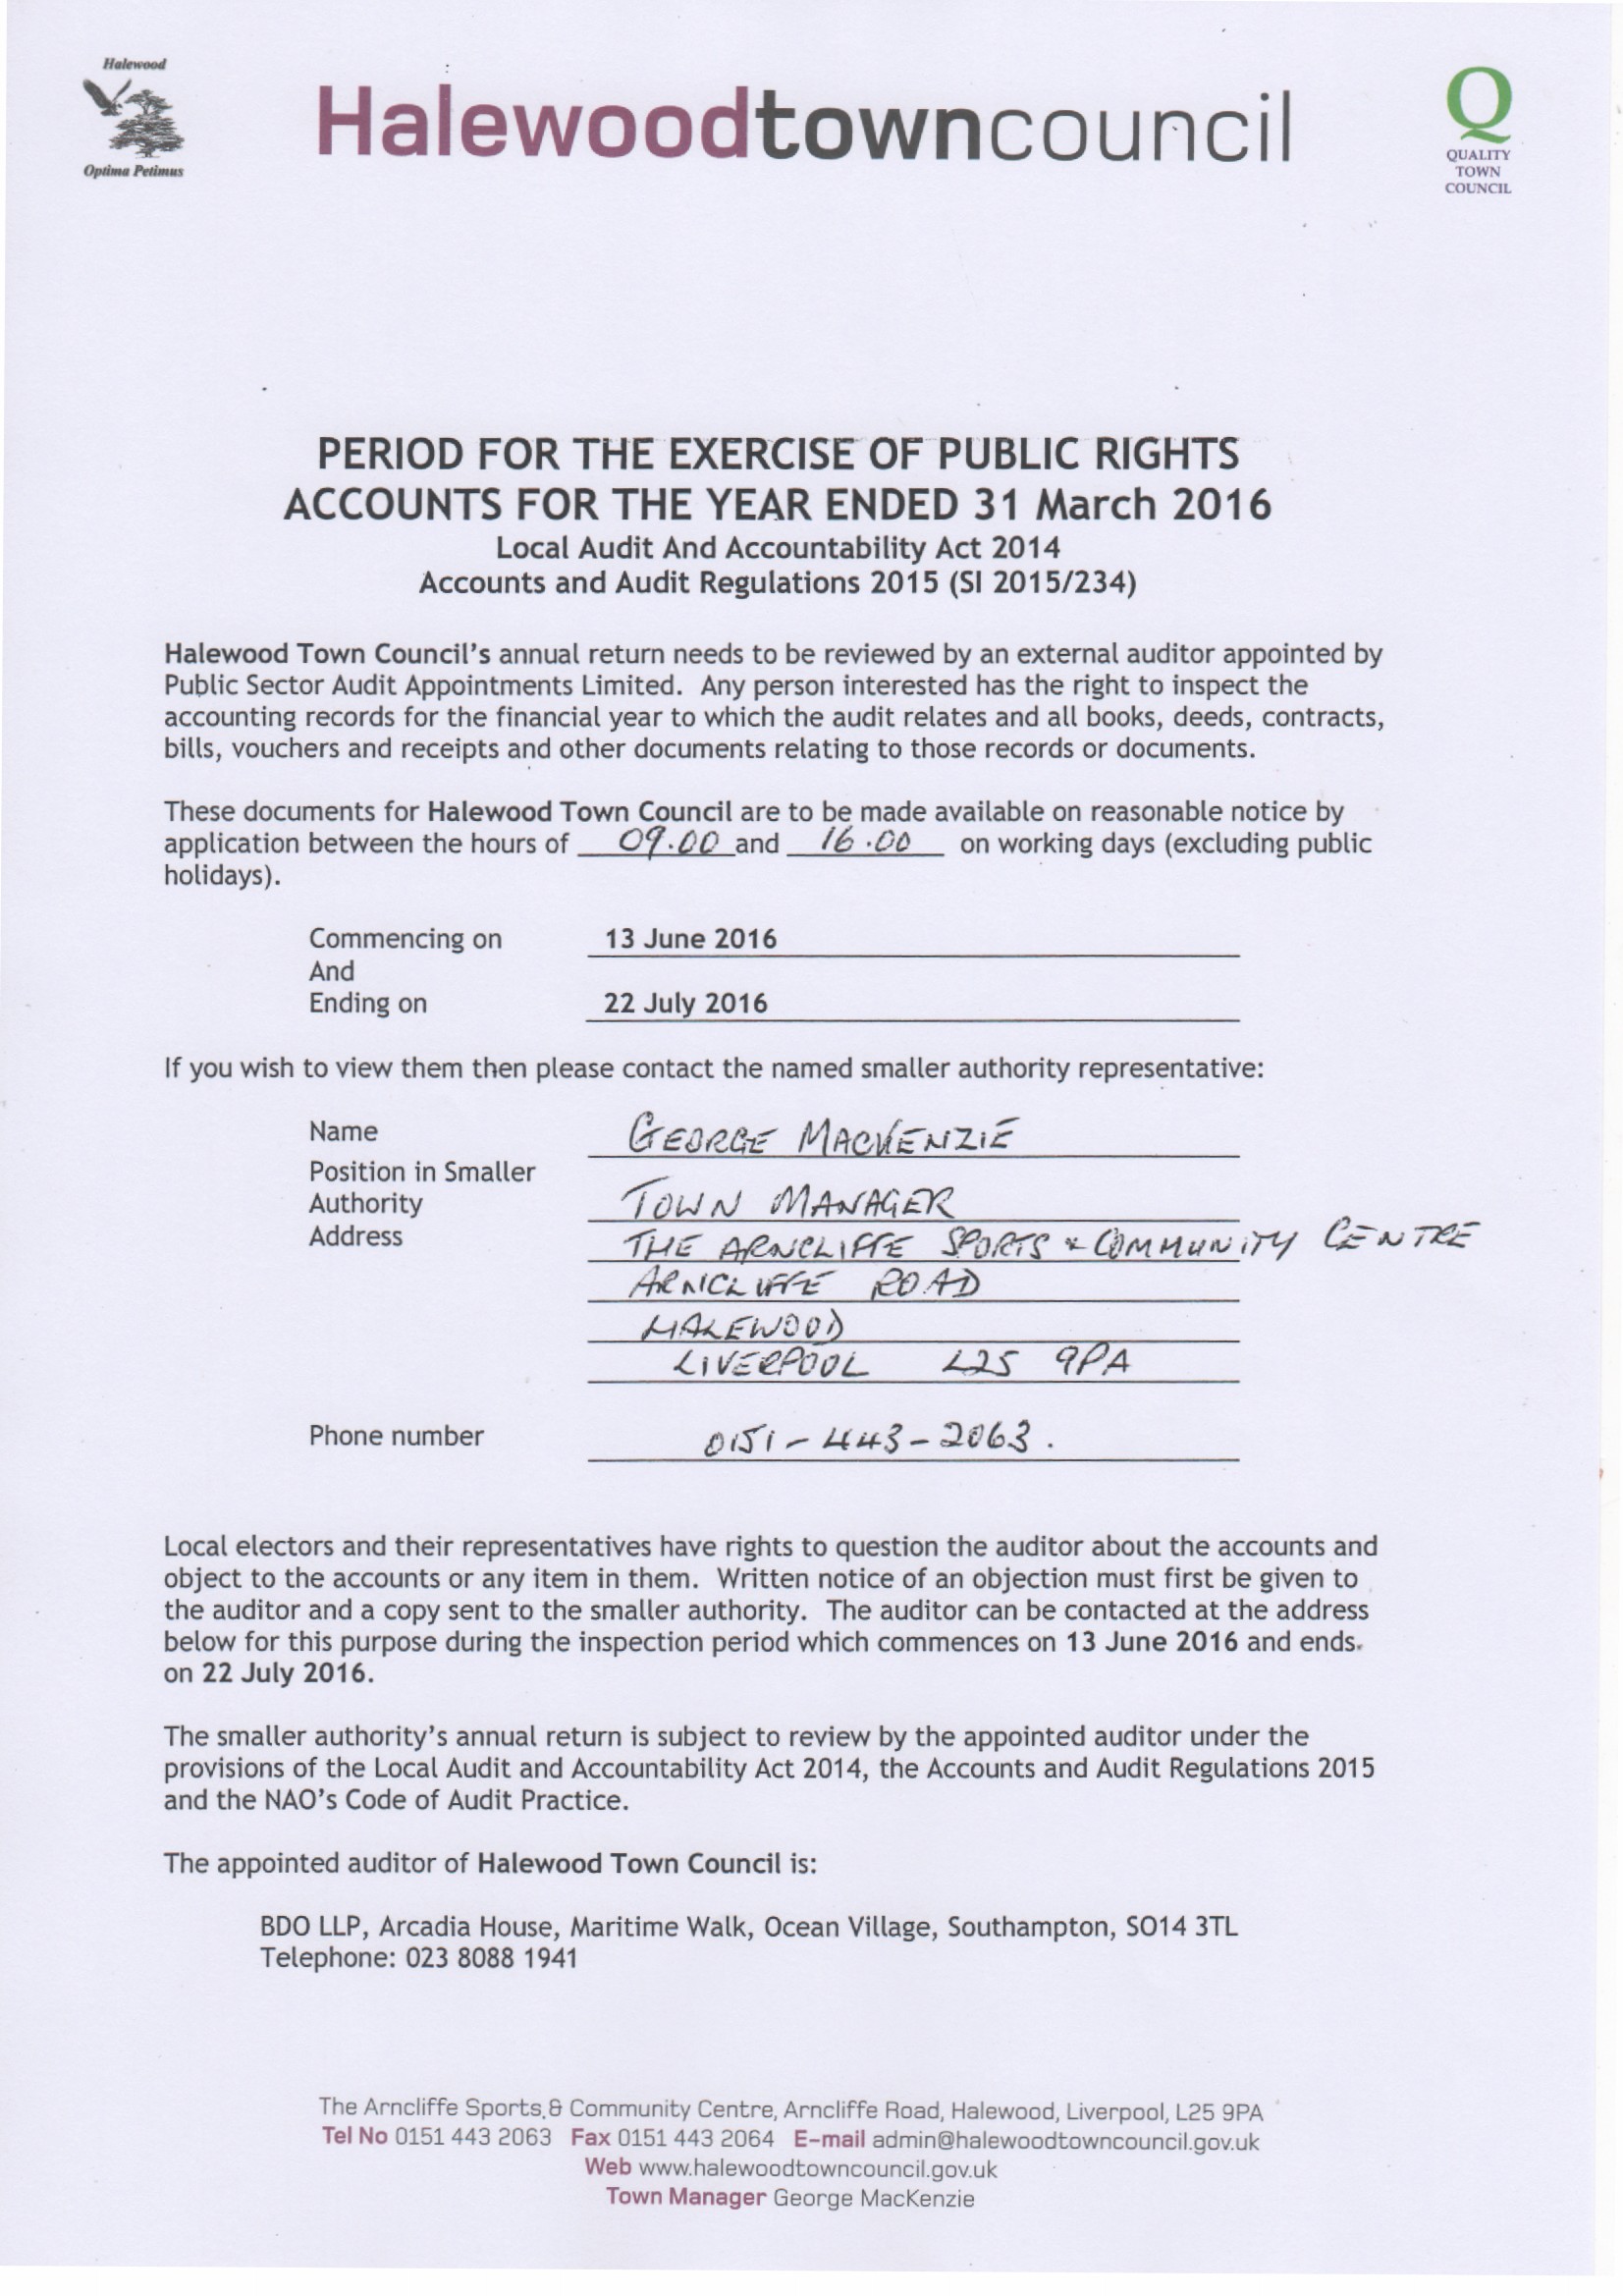 Public Rights Notice